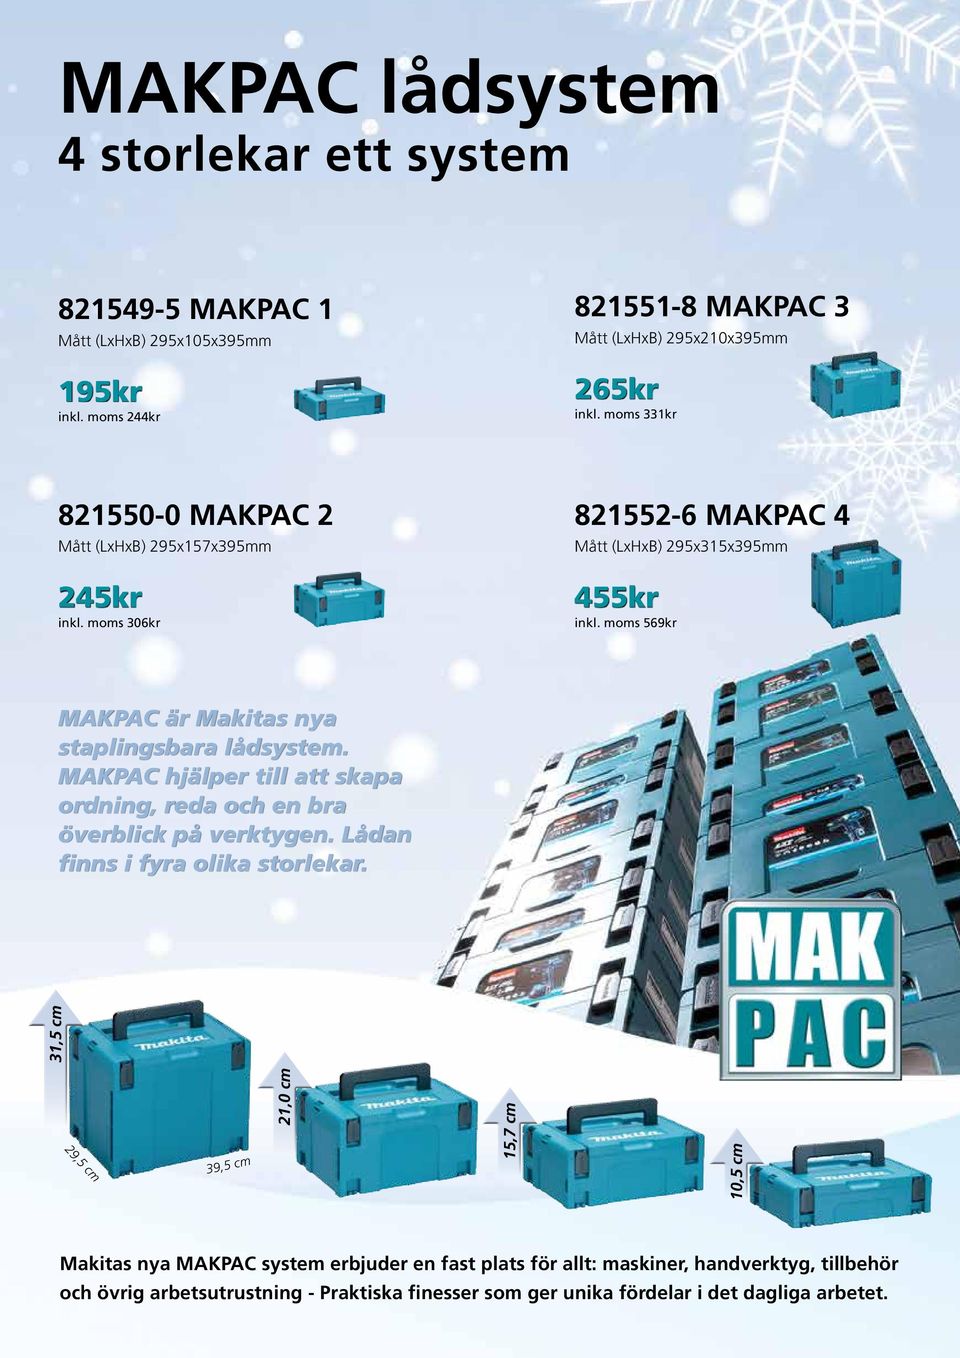 moms 569kr MAKPAC är Makitas nya staplingsbara lådsystem. MAKPAC hjälper till att skapa ordning, reda och en bra överblick på verktygen. Lådan finns i fyra olika storlekar.